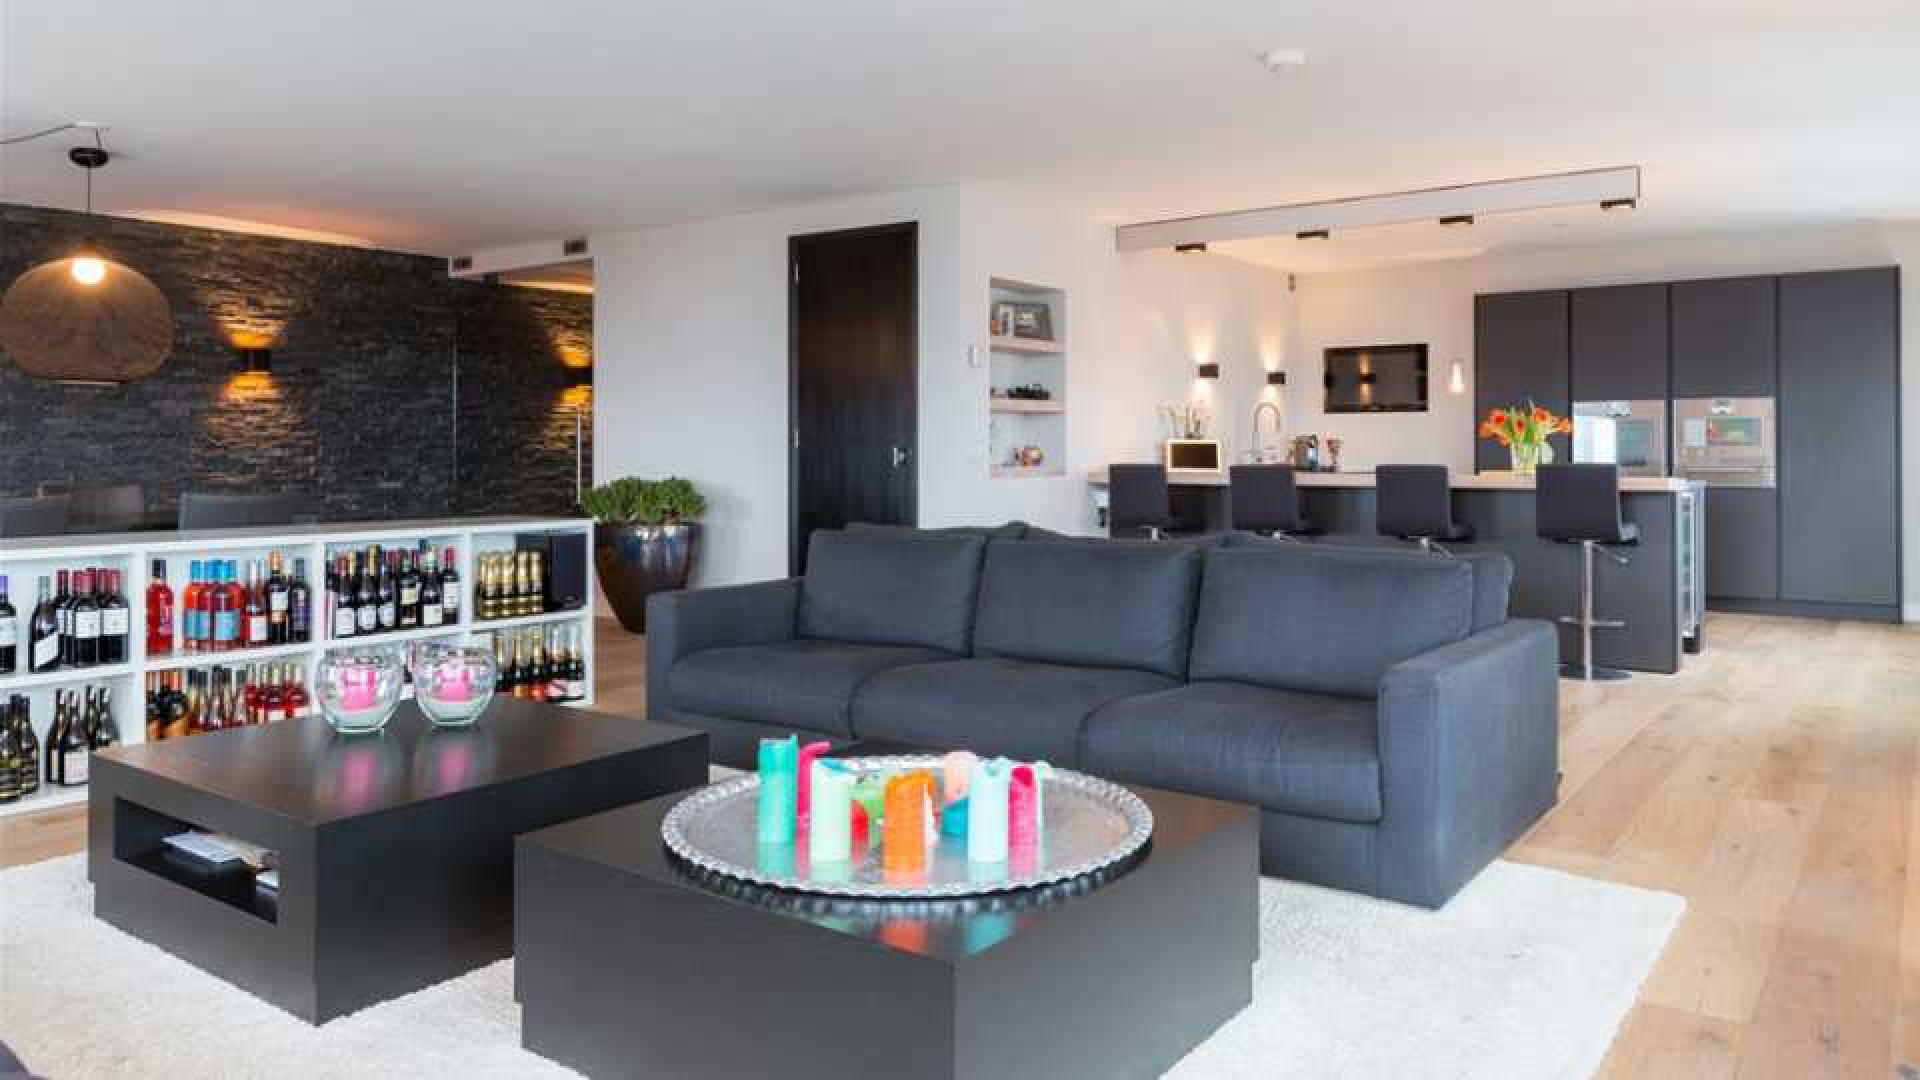 Amanda Krabbe en haar man Harrie Kolen zetten hun luxe penthouse in stille verkoop. Zie foto's 11